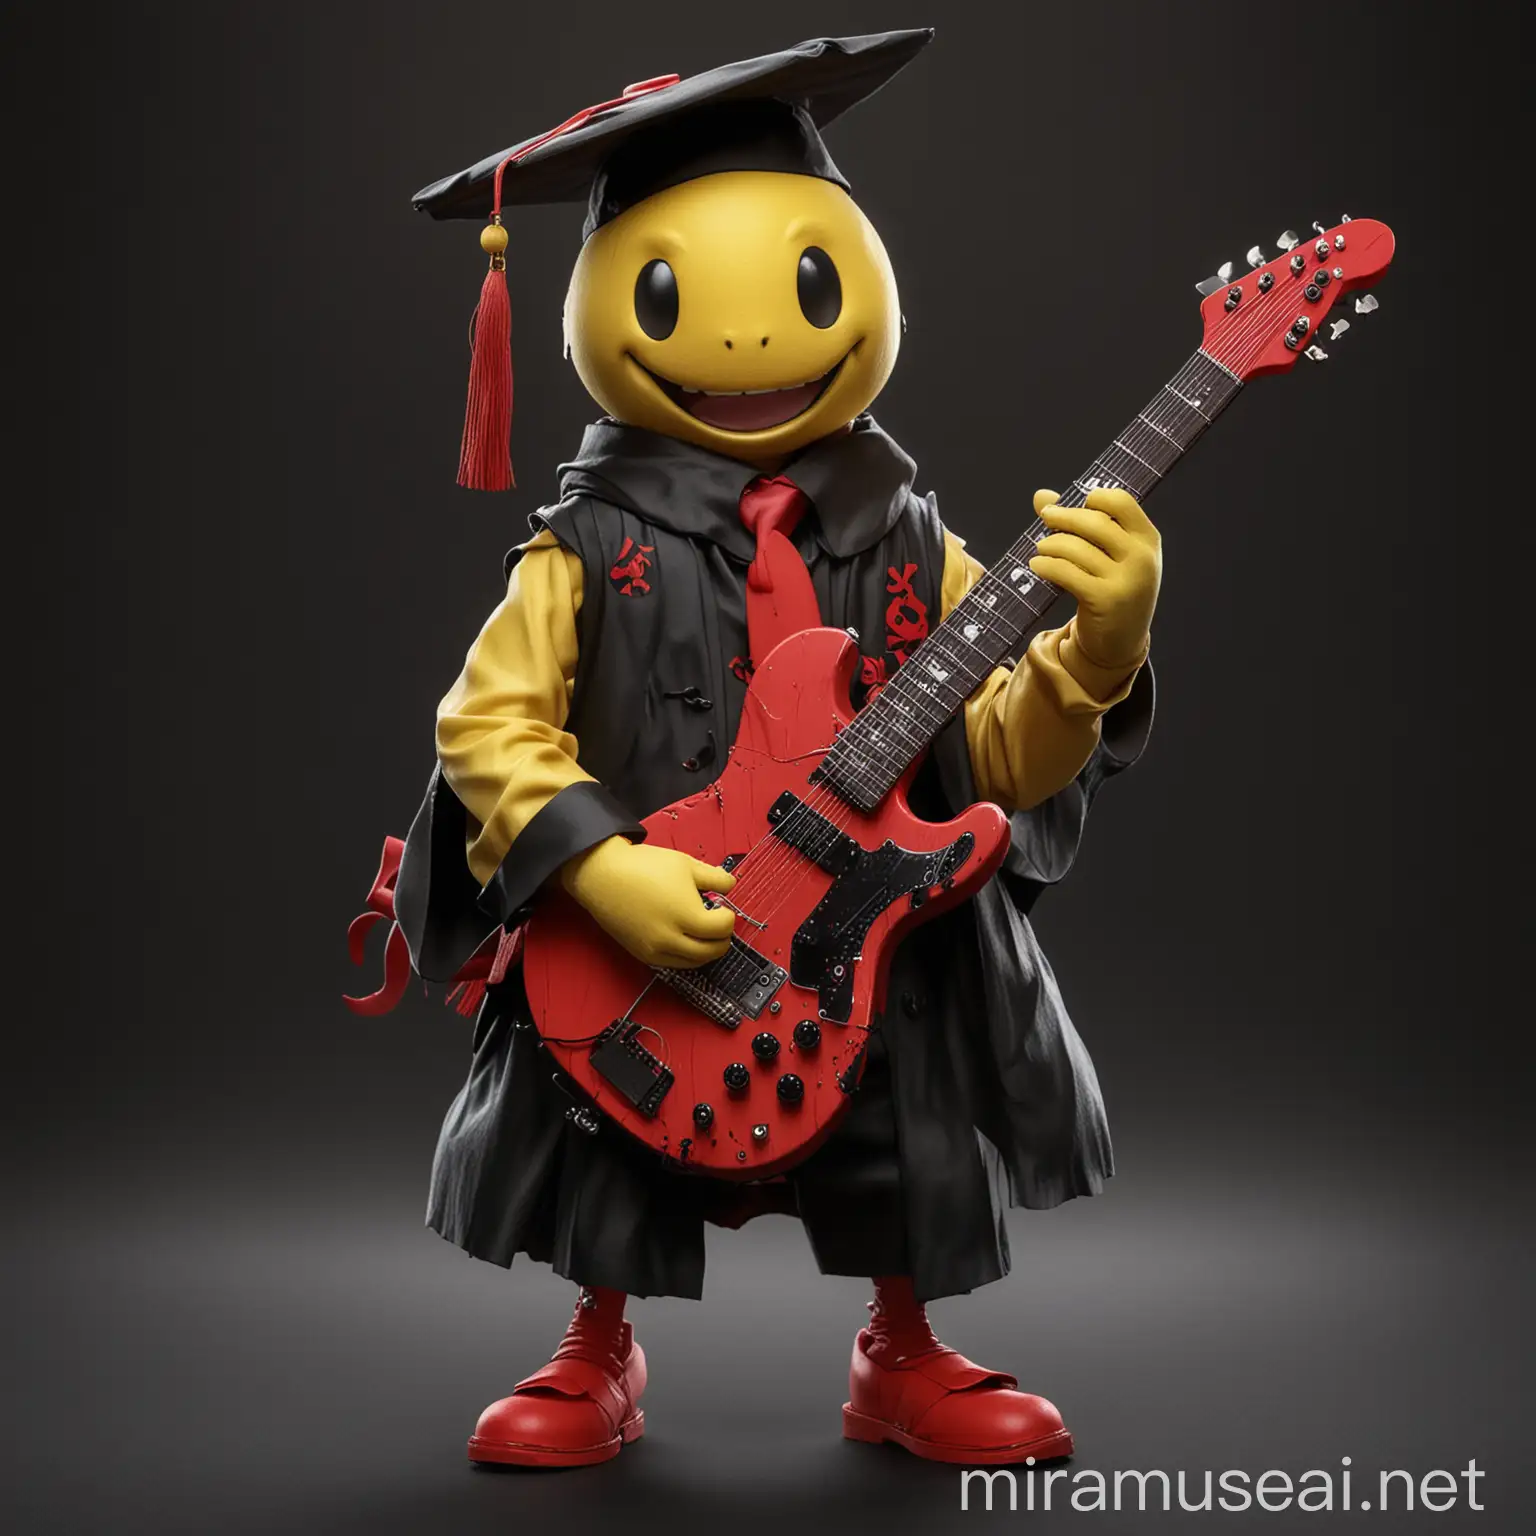 koro sensei avec une guitare electrique rouge dans les mains fond sombre en tenue de remise de diplome noir avec une casquette noir et des tentacules
